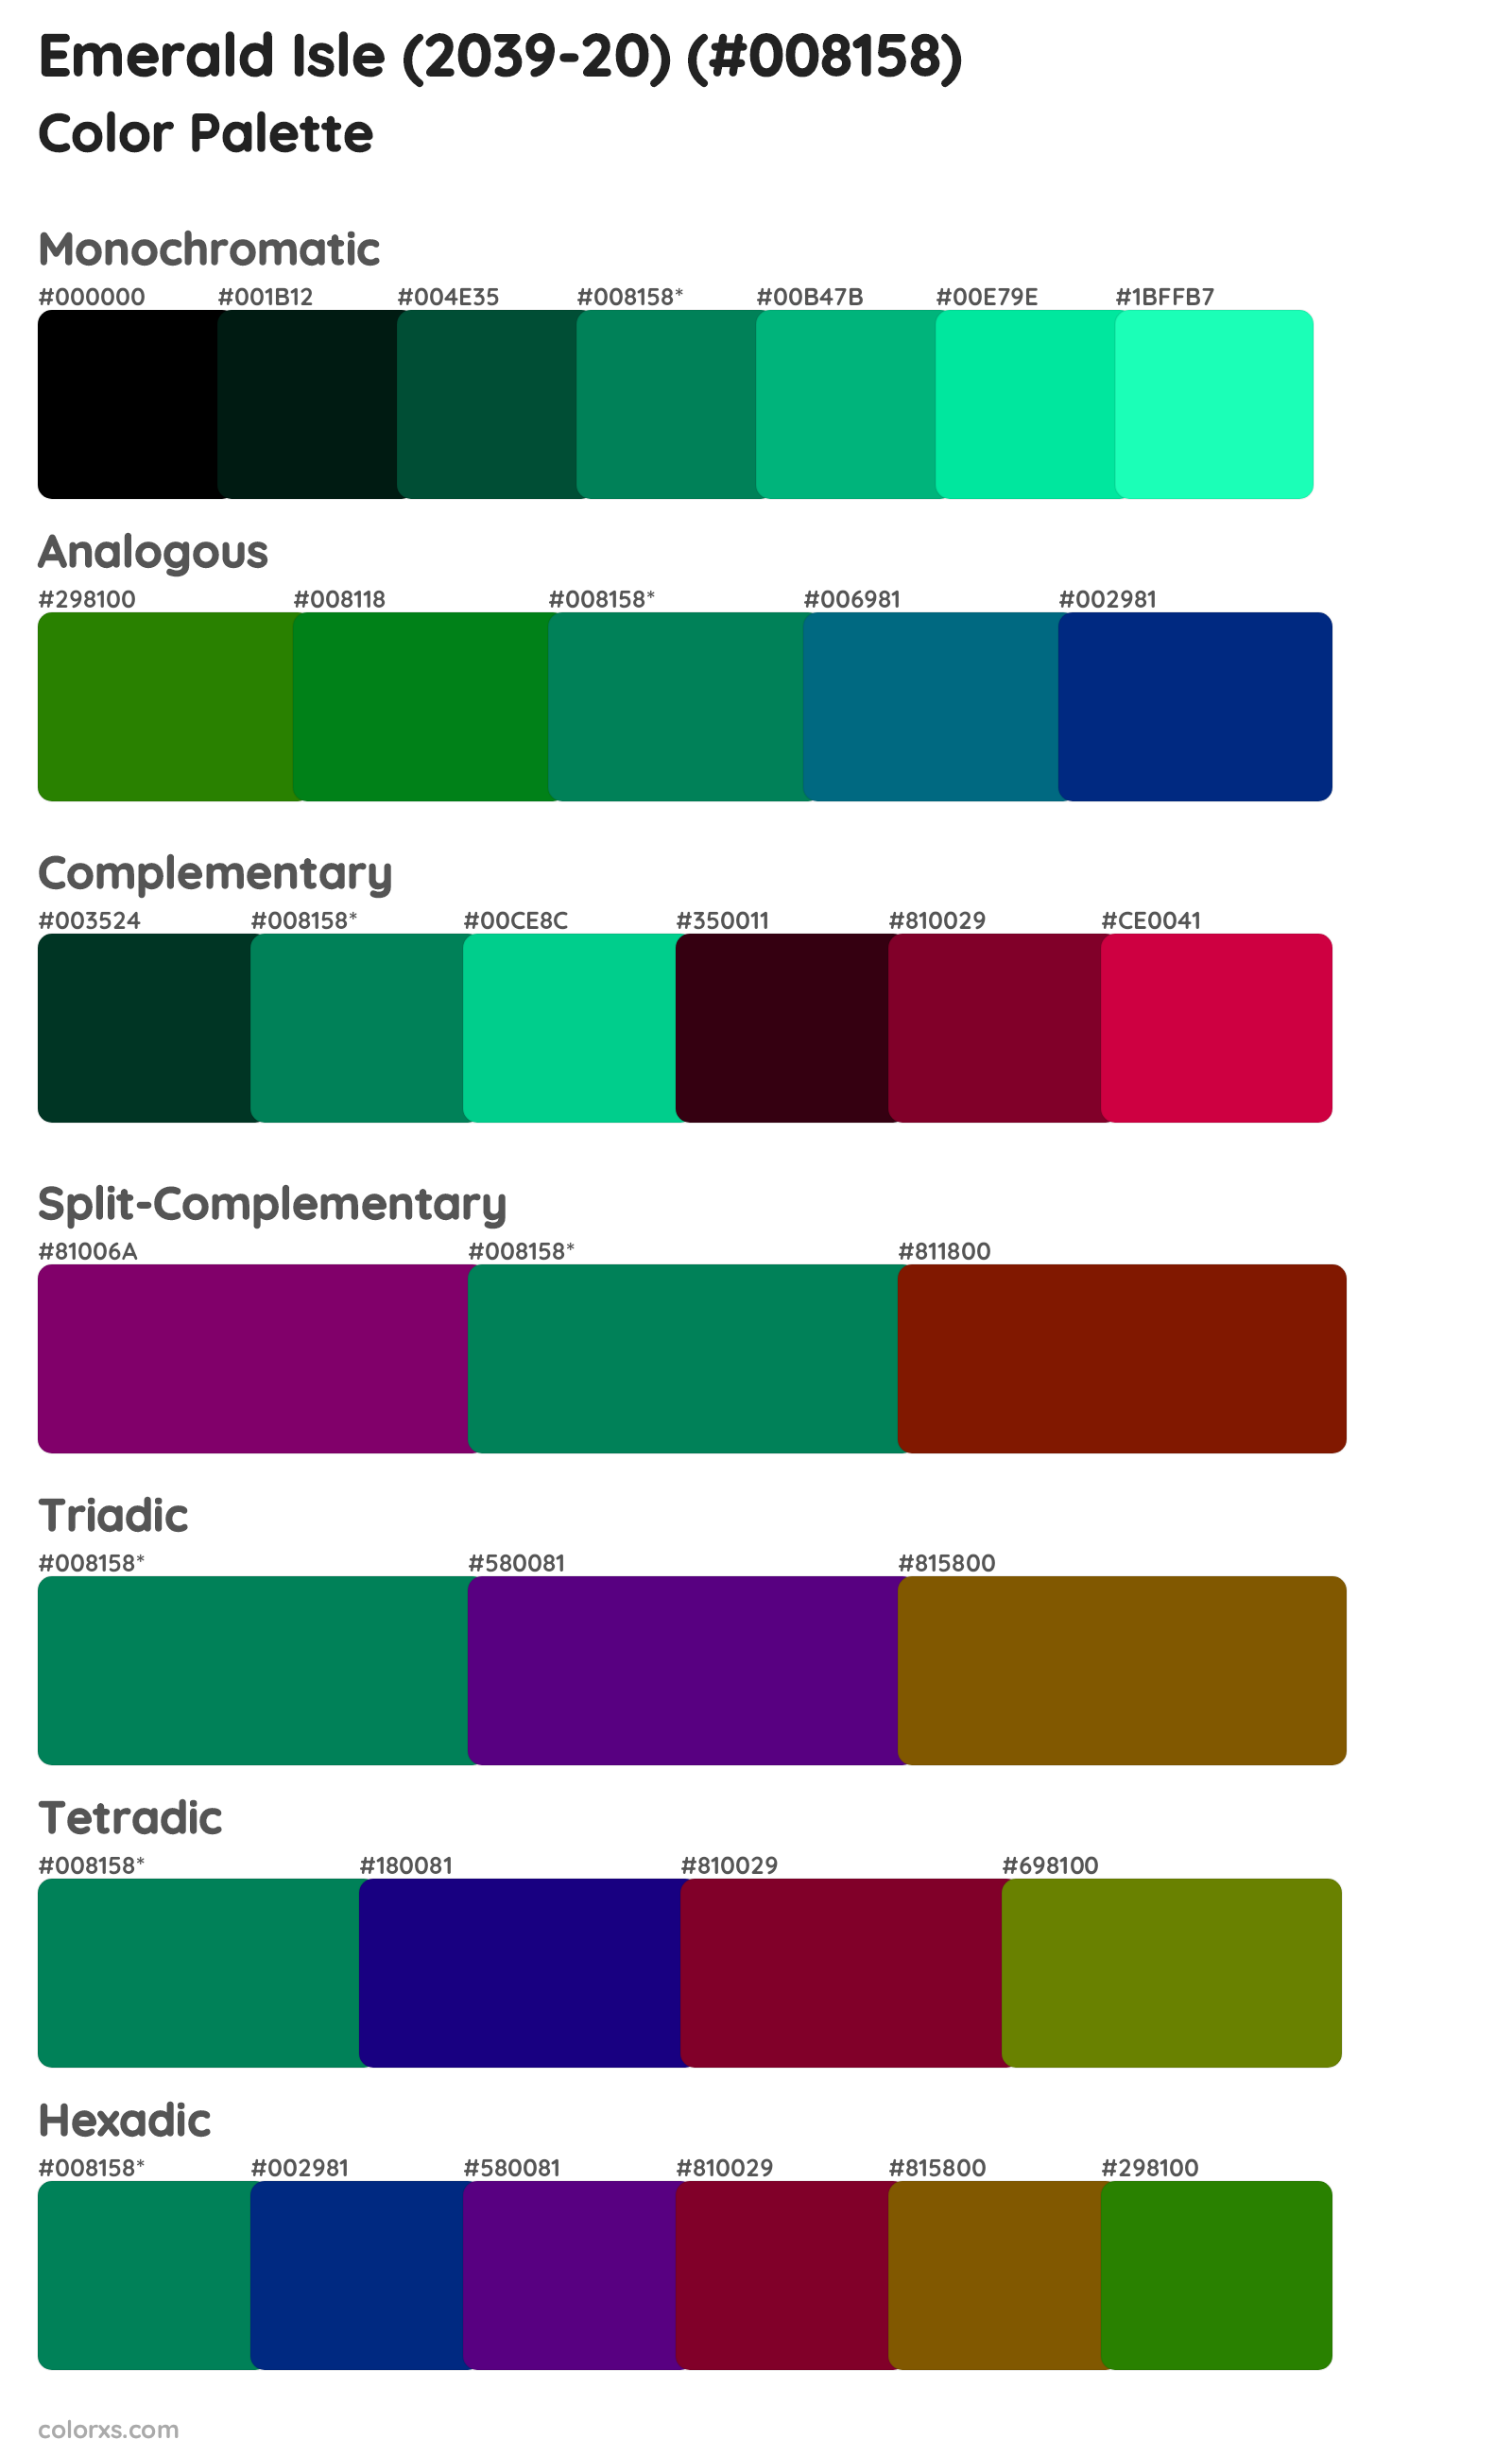 Emerald Isle (2039-20) Color Scheme Palettes